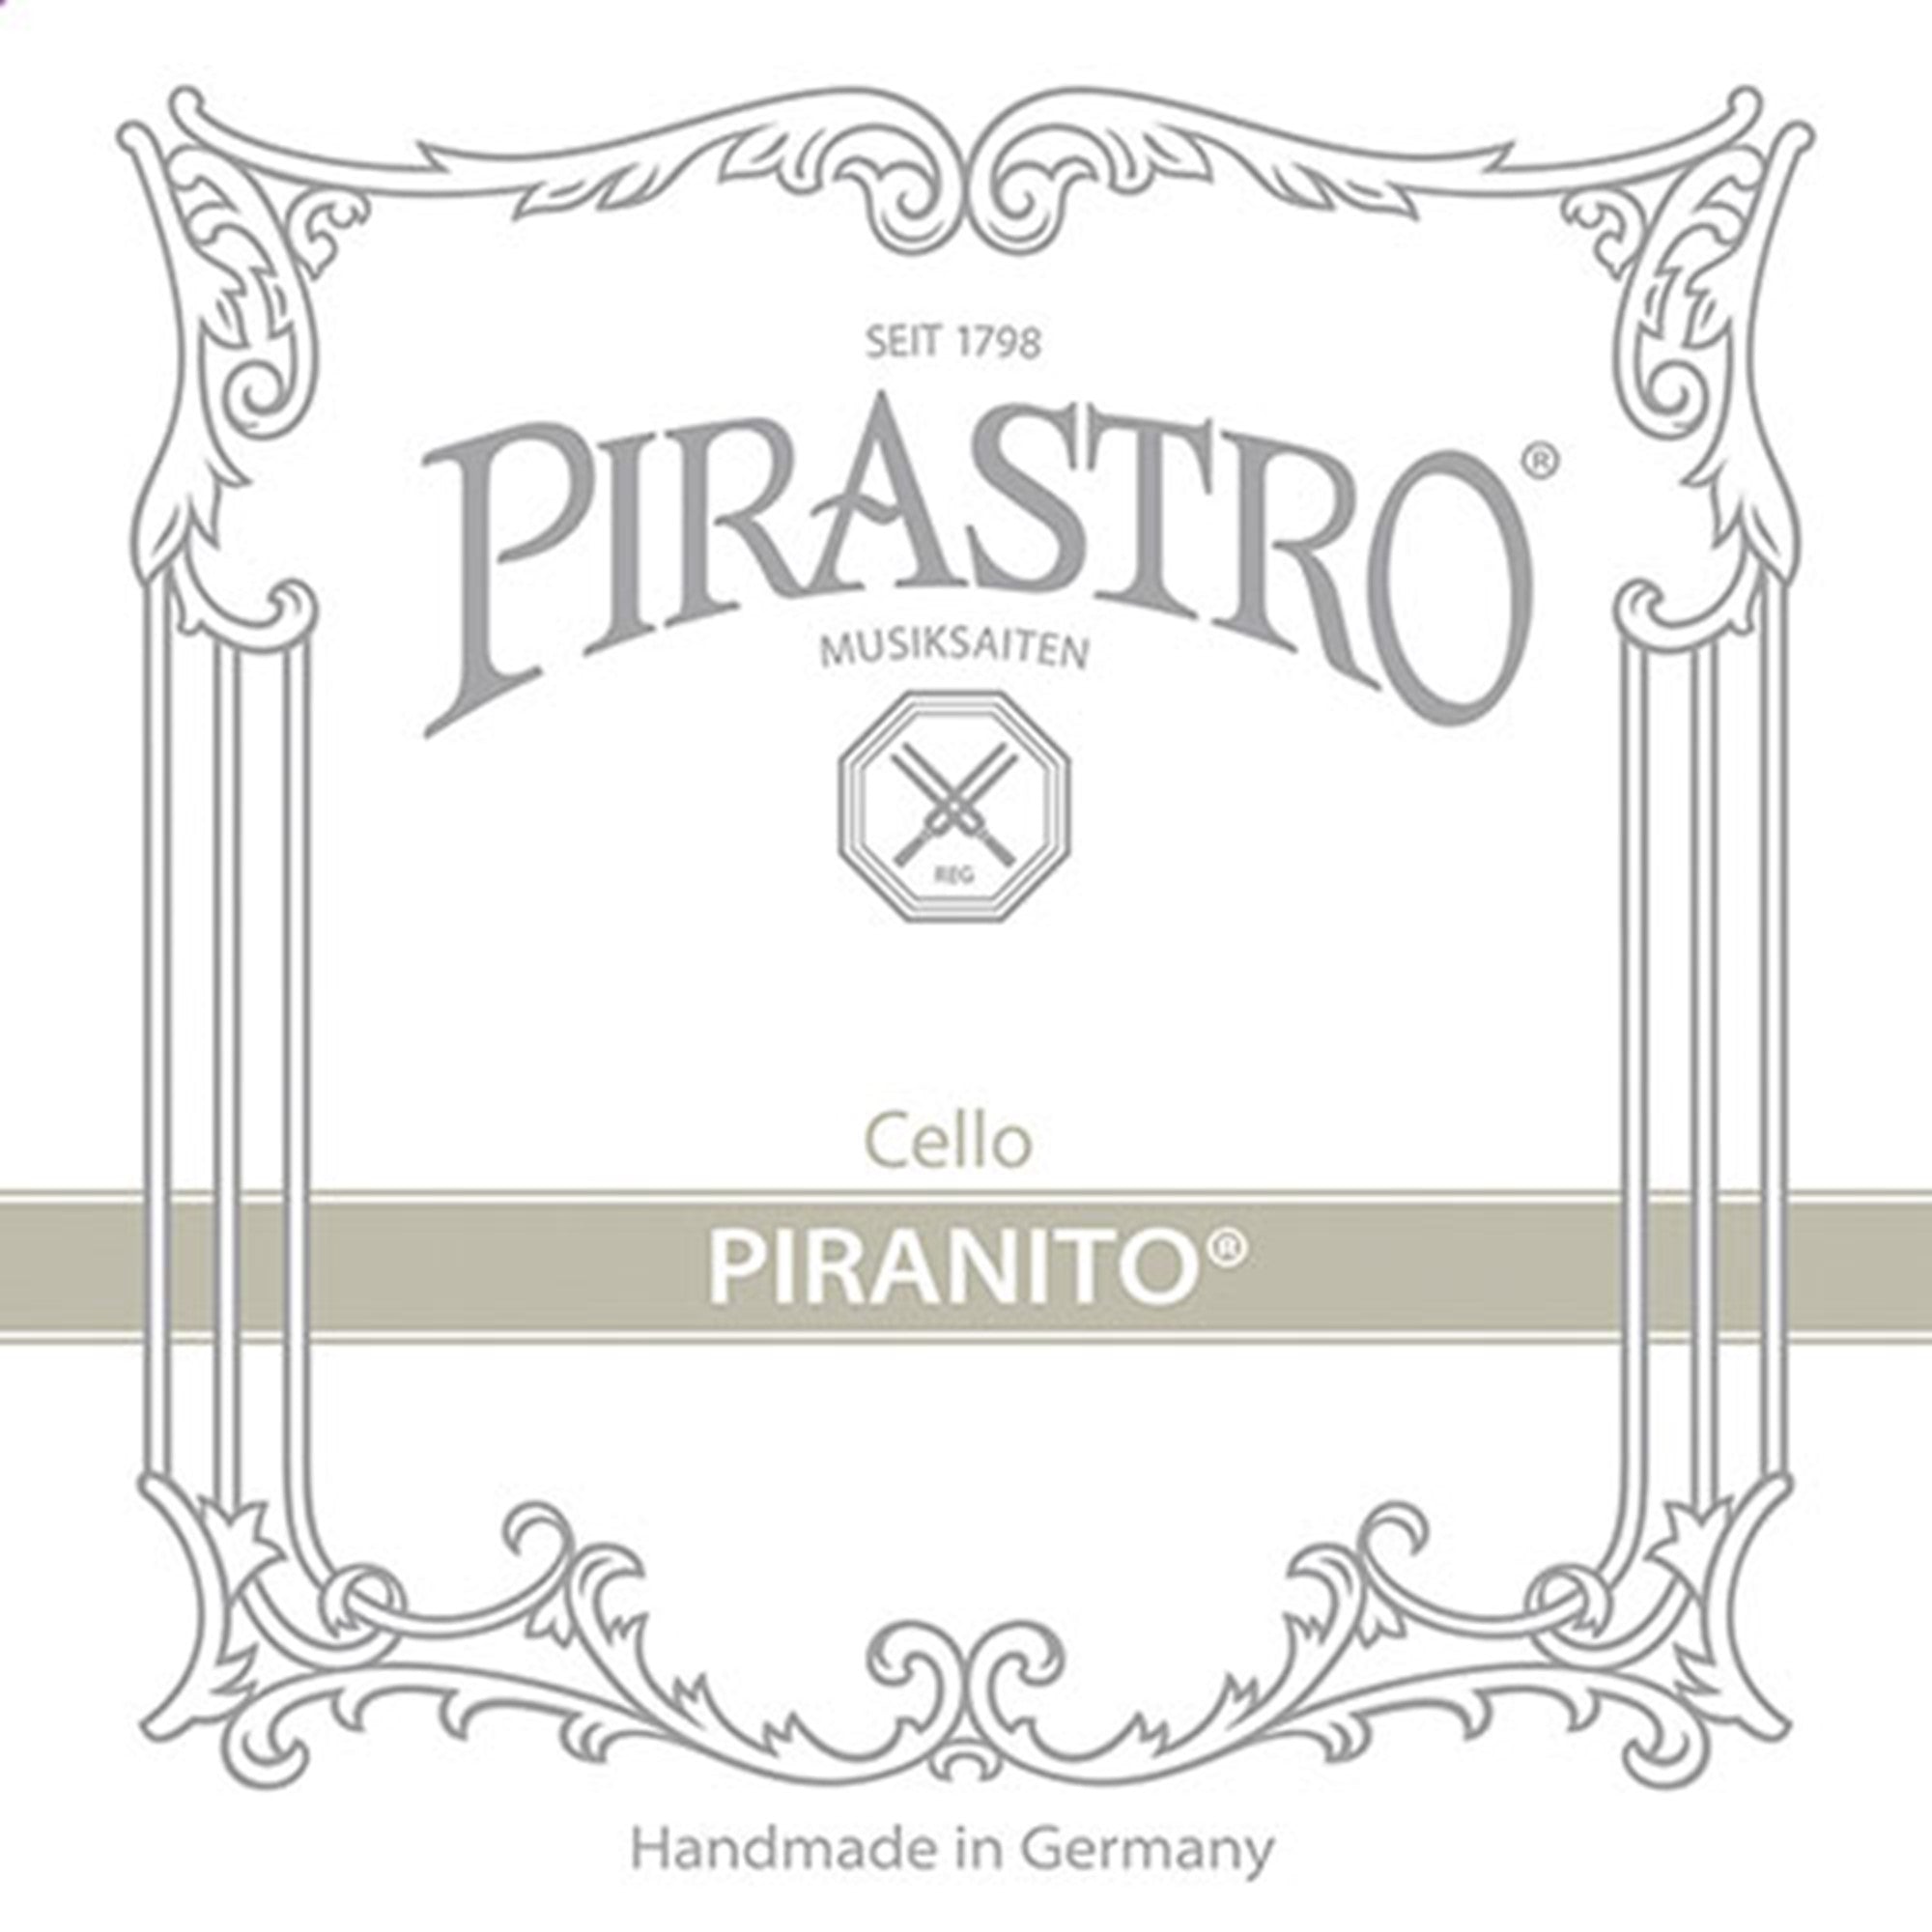 Pirastro Piranito Cello D String